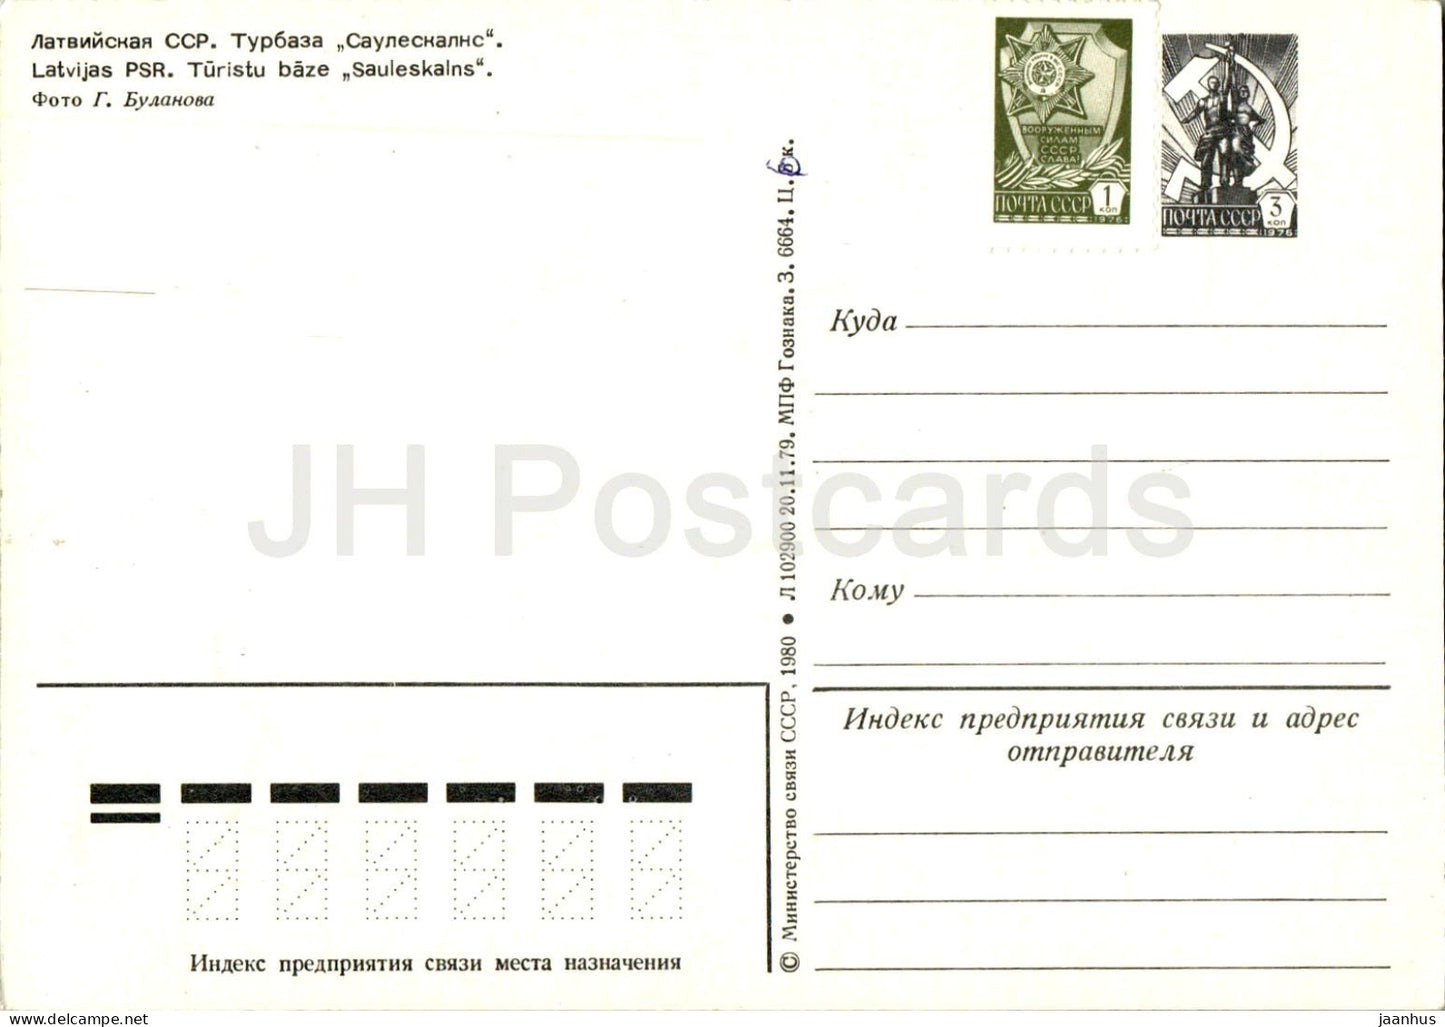 Tourist Base Sauleskalns - postal stationery - 1980 - Latvia USSR - unused